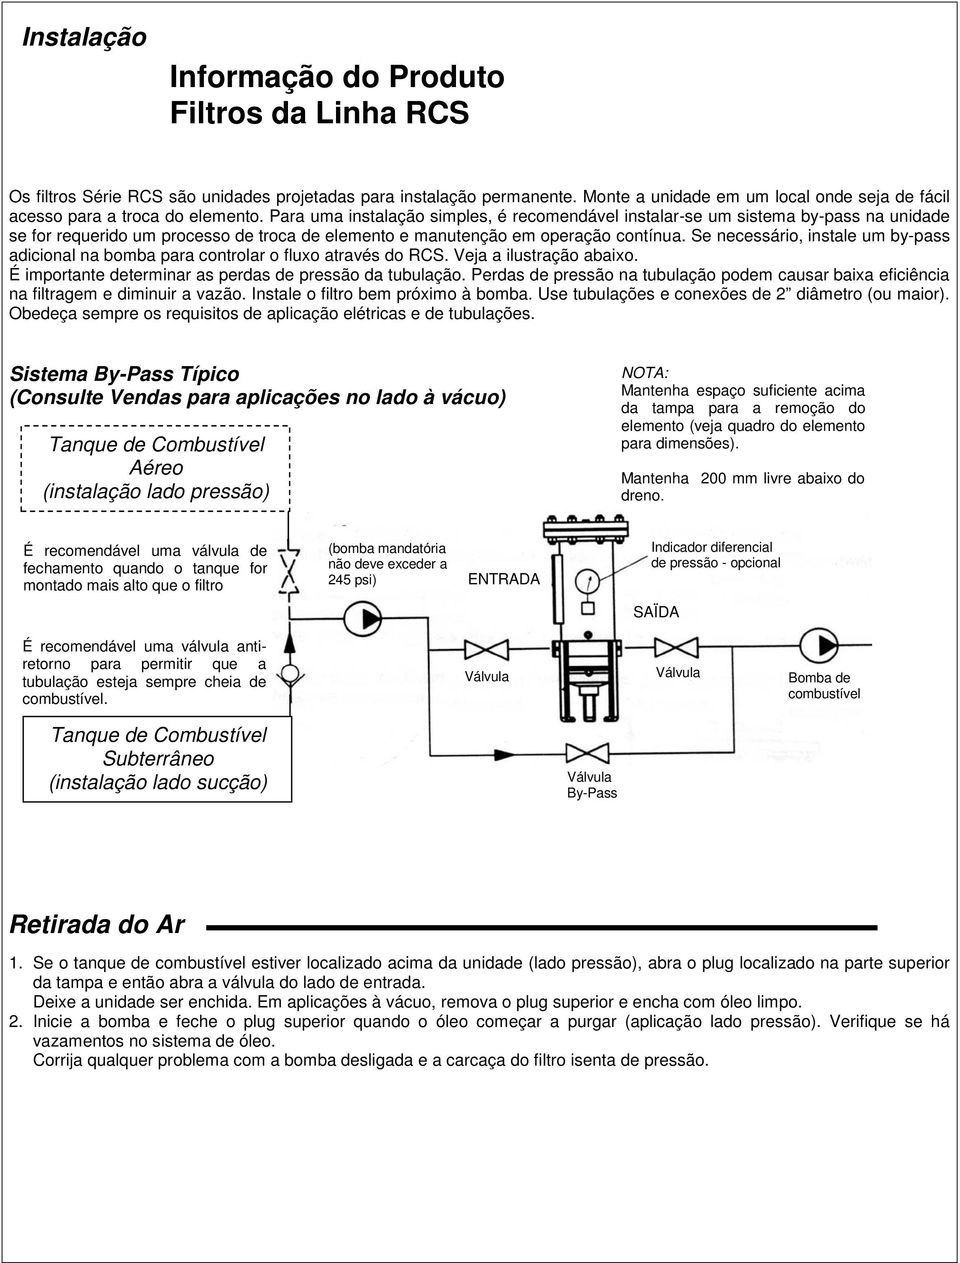 Se necessário, instale um by-pass adicional na bomba para controlar o fluxo através do RCS. Veja a ilustração abaixo. É importante determinar as perdas de pressão da tubulação.